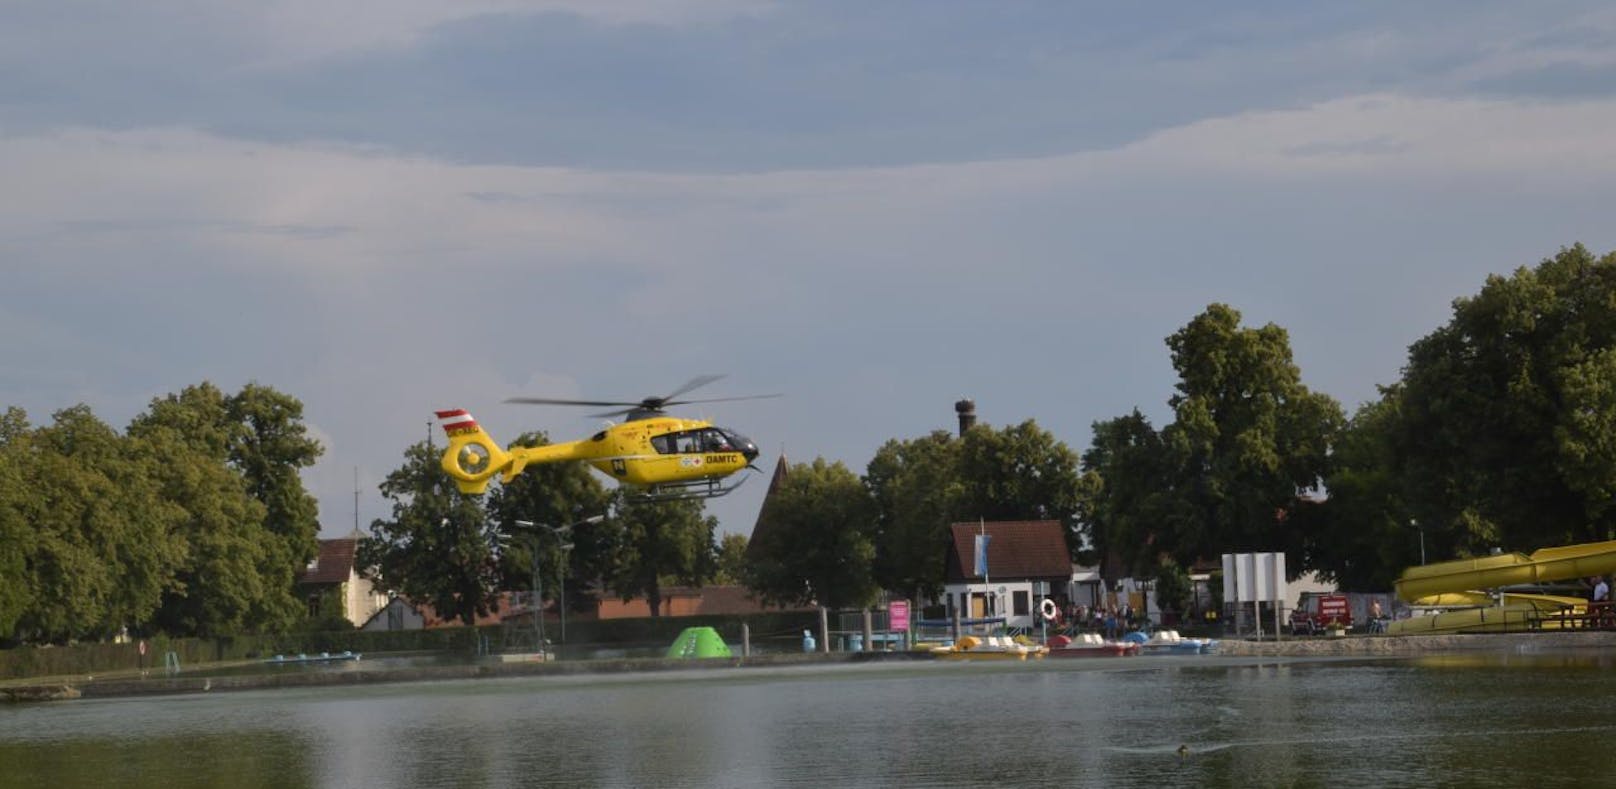 Helikopter über dem Freibad Horn.